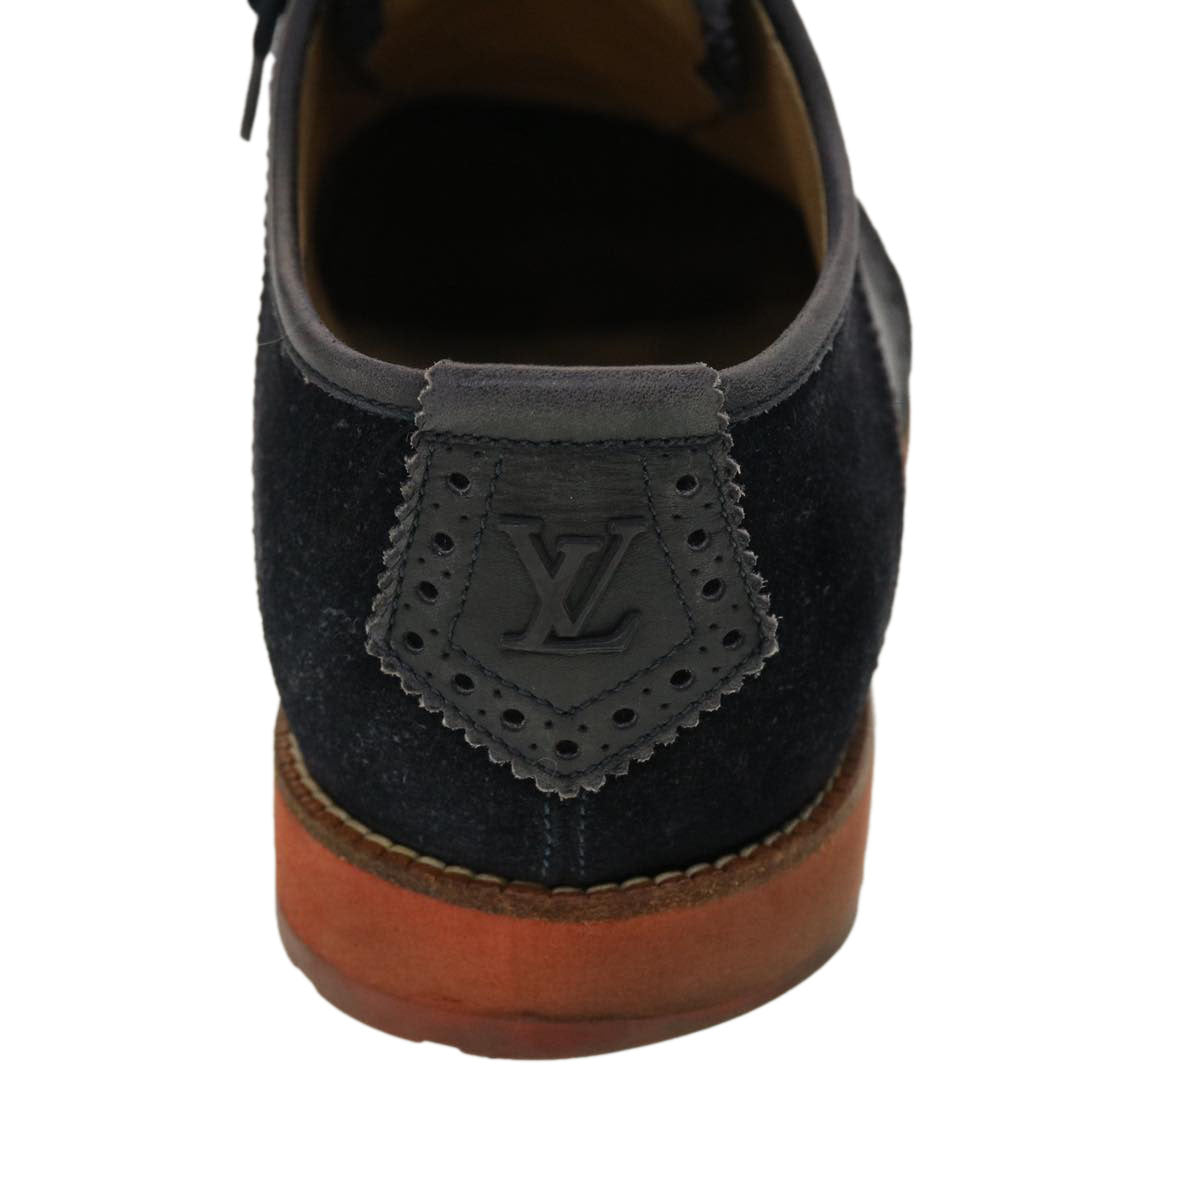 LOUIS VUITTON Shoes Suede Leather 6M Black LV Auth 39347